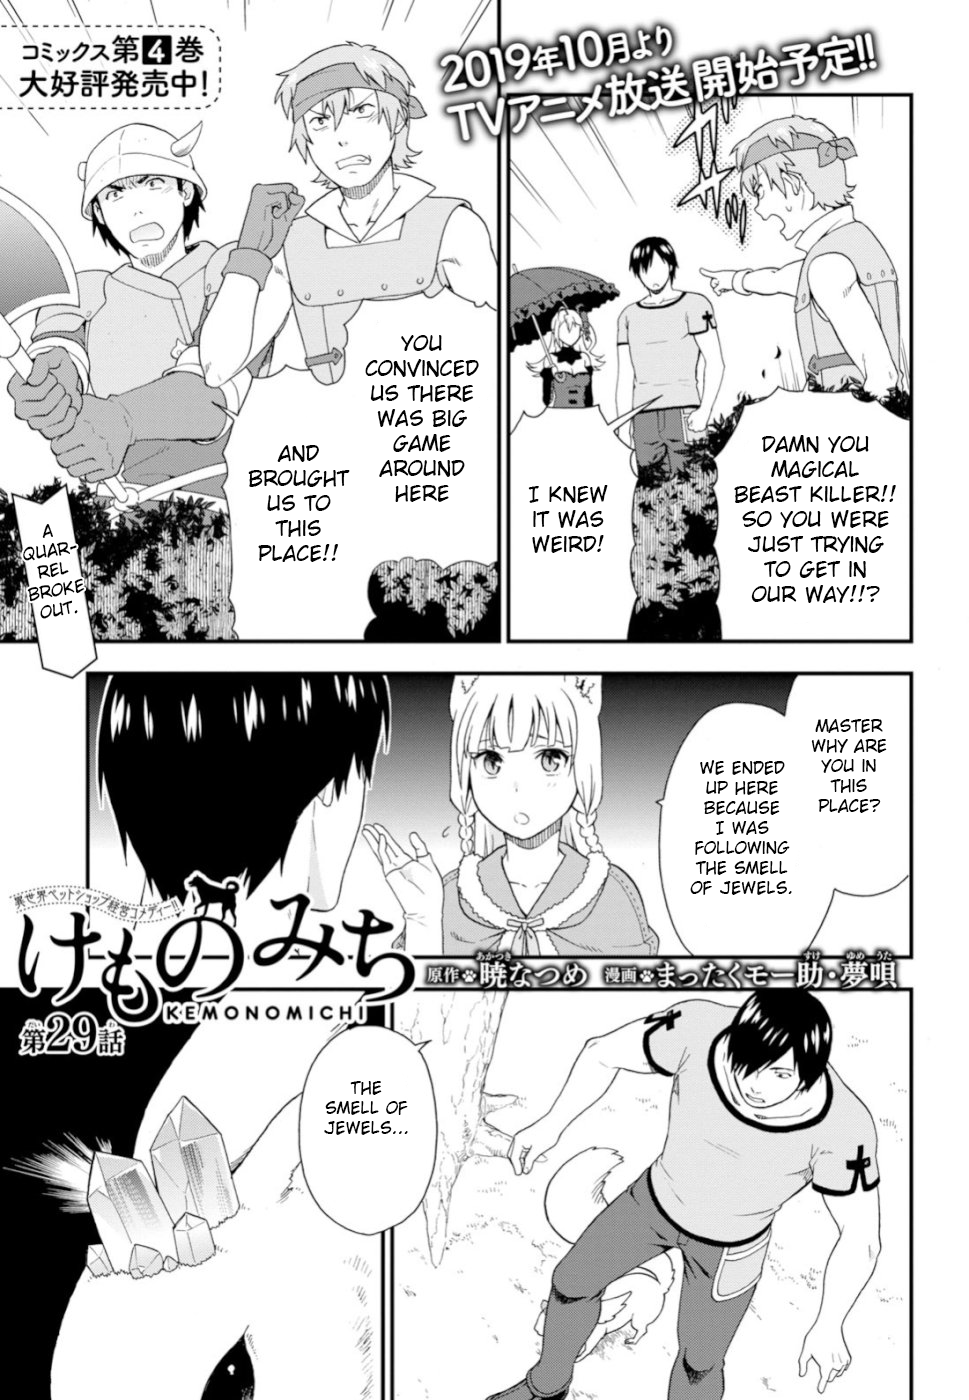 Kemono Michi (Natsume Akatsuki) - Page 1